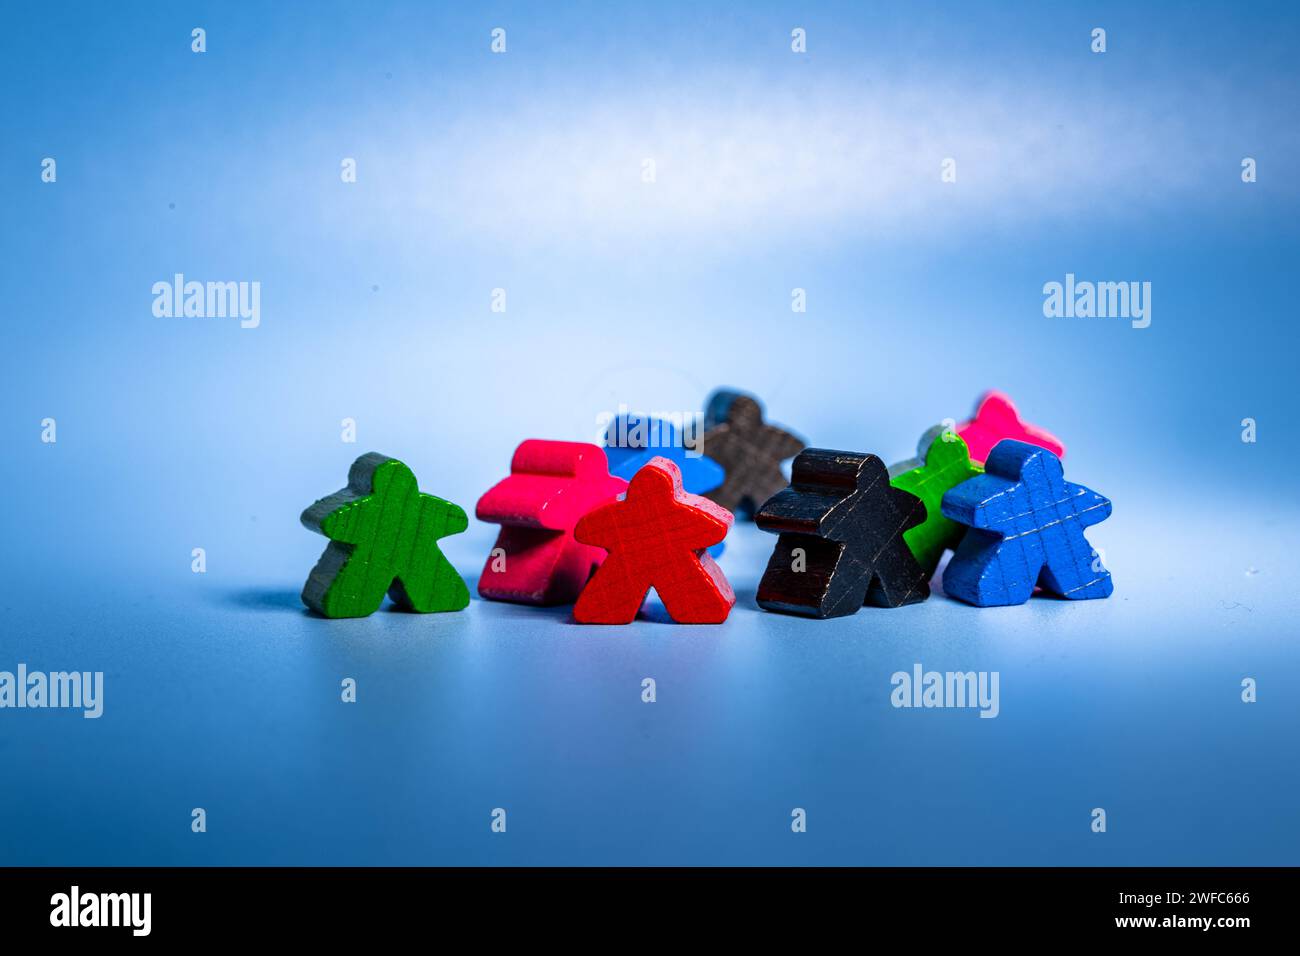 Eine Sammlung von Miniaturfiguren, die auf einem leuchtend blauen Hintergrund angeordnet sind Stockfoto